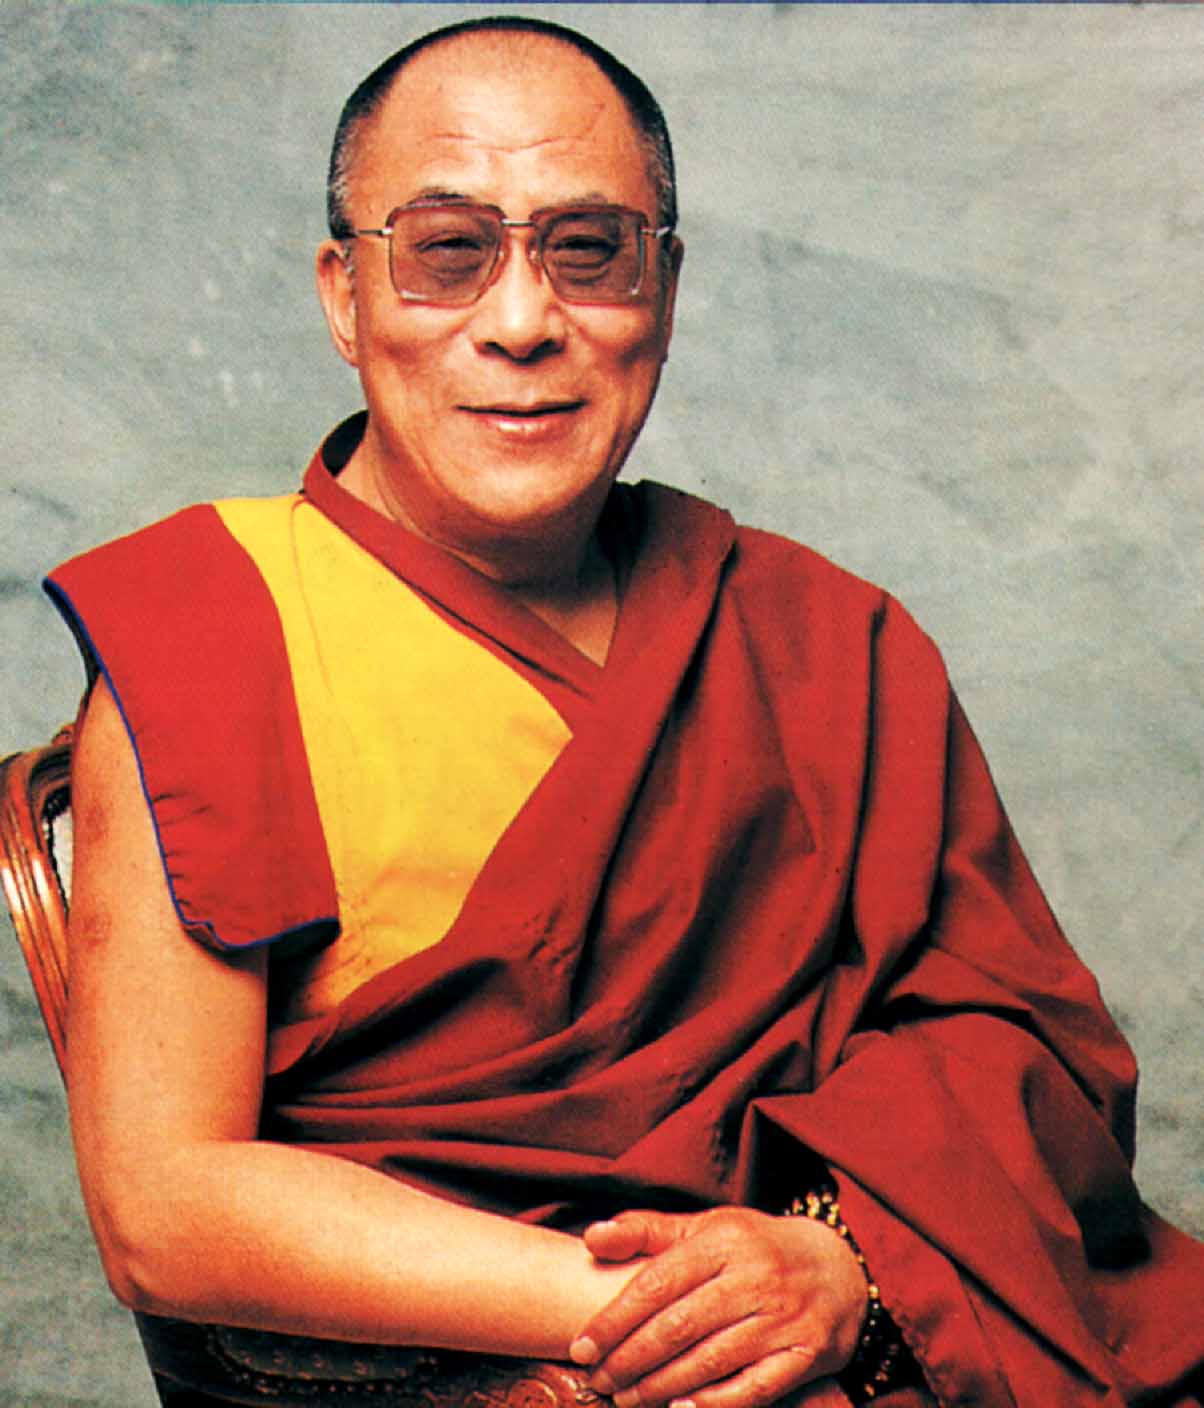 http://dalailamafilm.com/images/dalai_lama.JPG